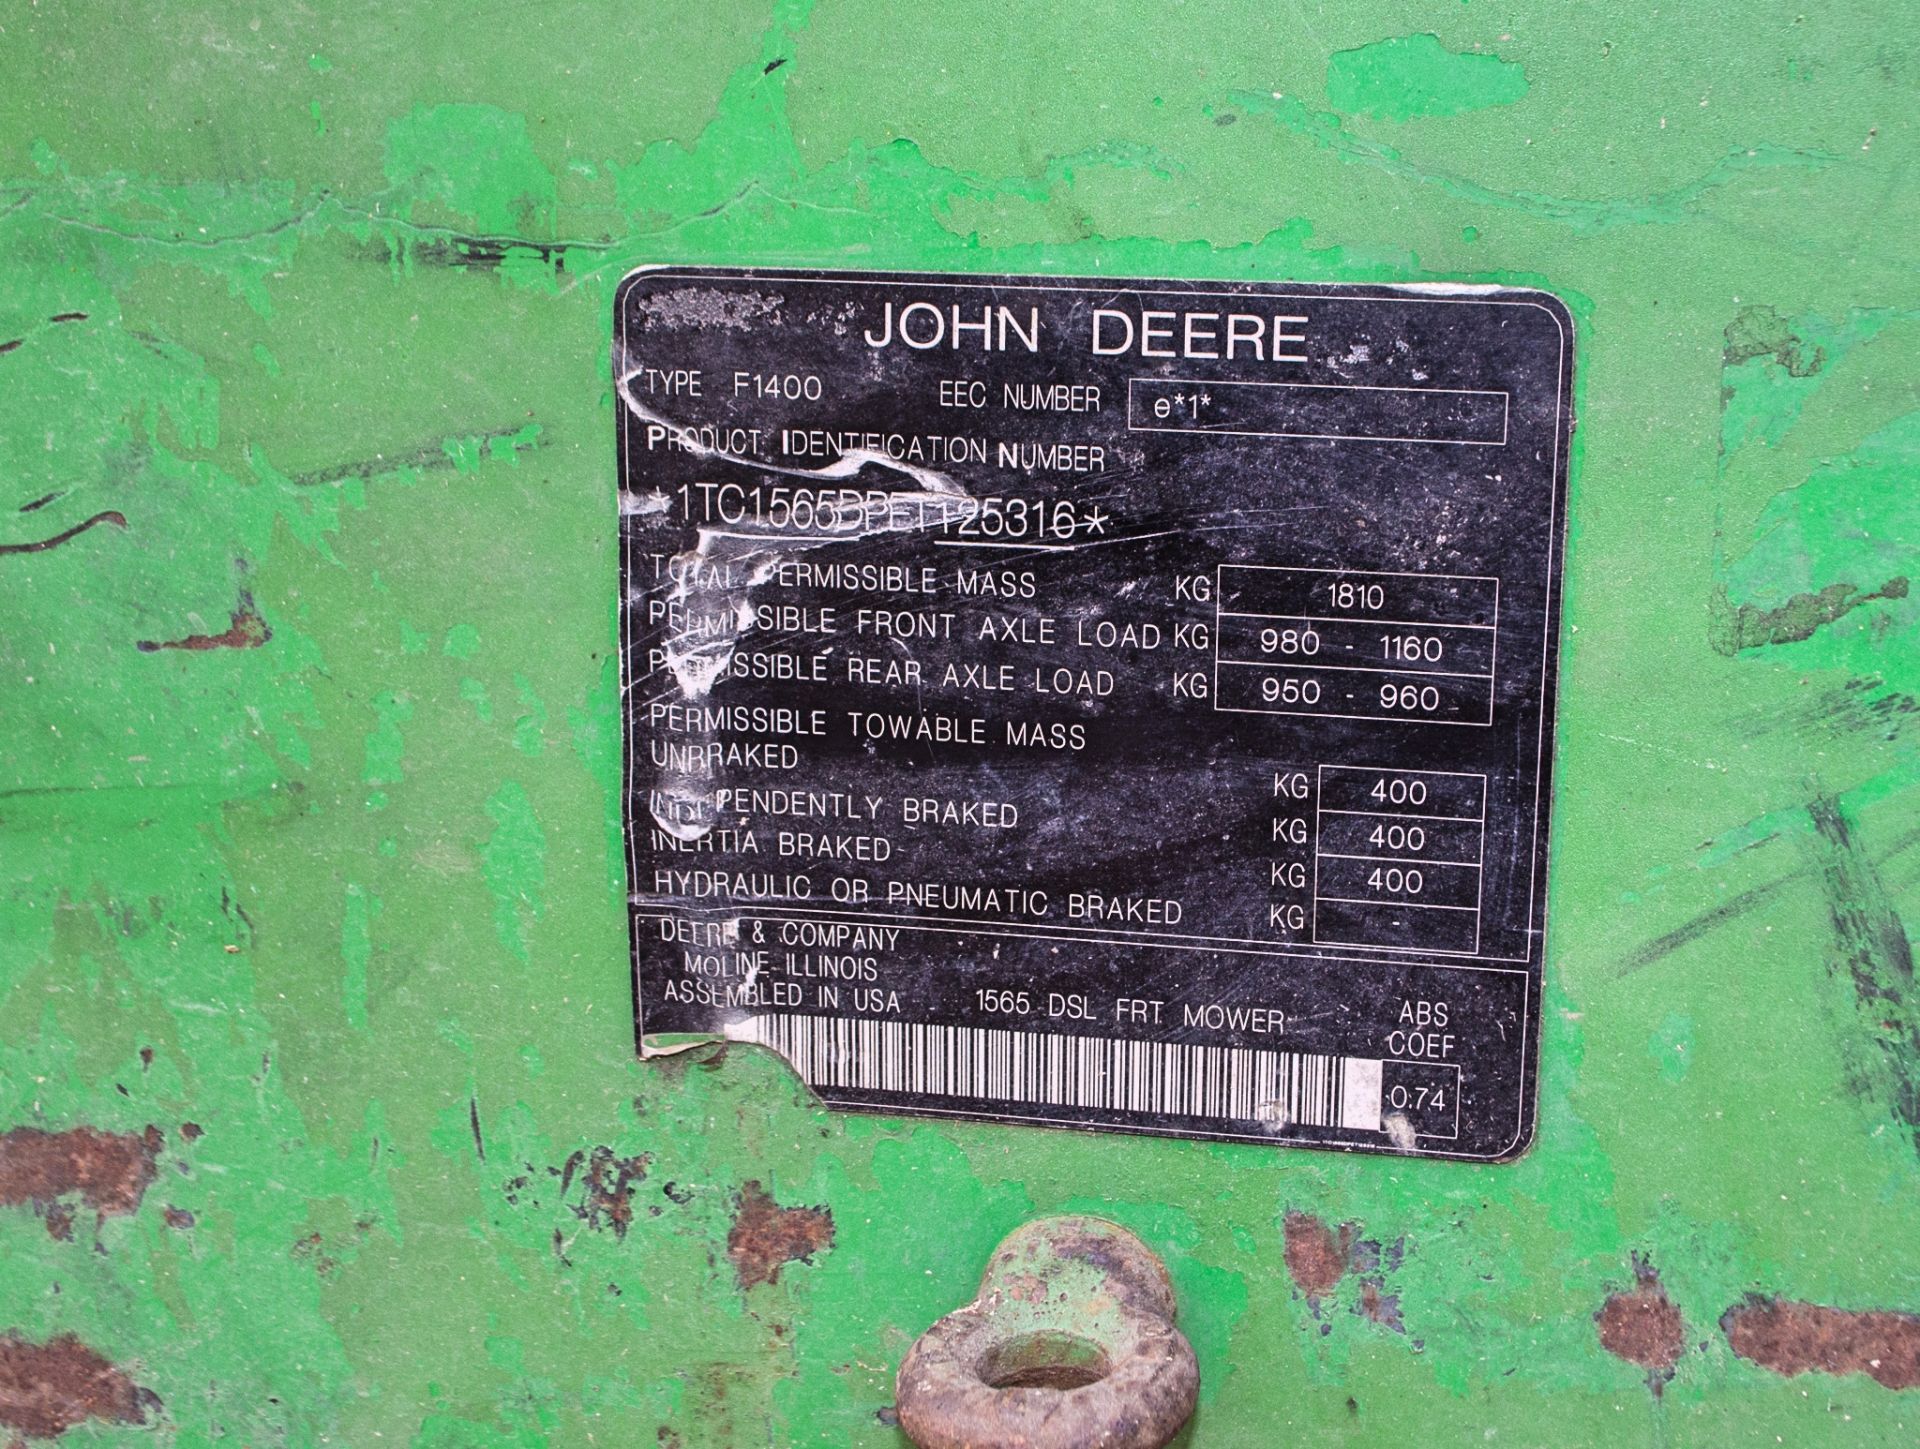 John Deere 1565 Series 2 4WD diesel ride on lawn mower S/N: 125316 Recorded Hours: 2004 - Image 16 of 16